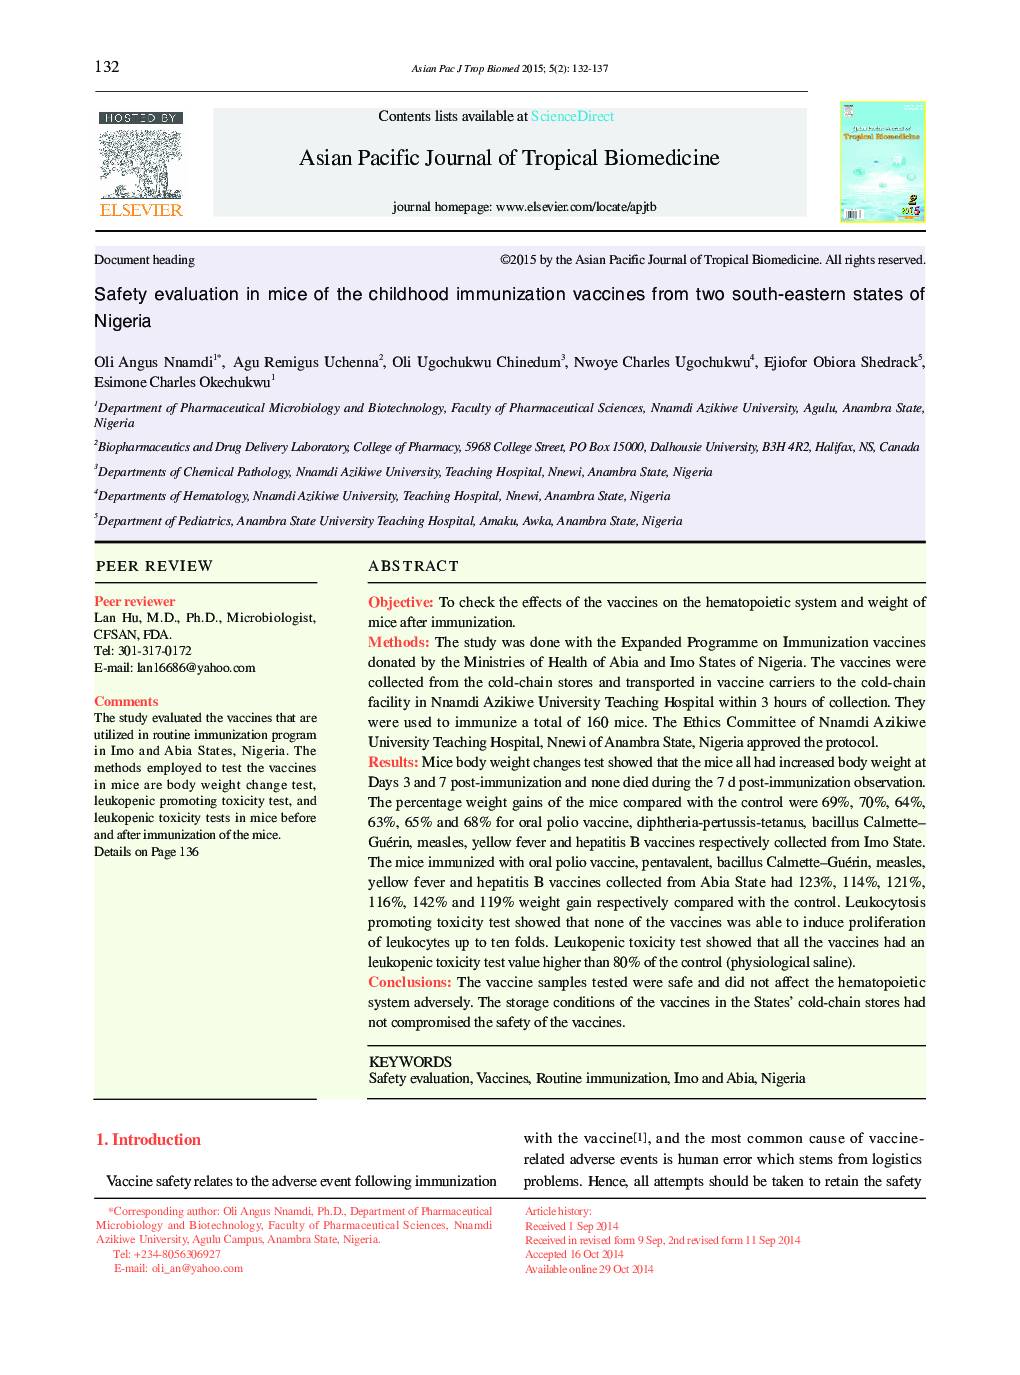 ارزیابی ایمنی در موش های واکسن های ایمن سازی دوران کودکی از دو کشور جنوب شرقی نیجریه 